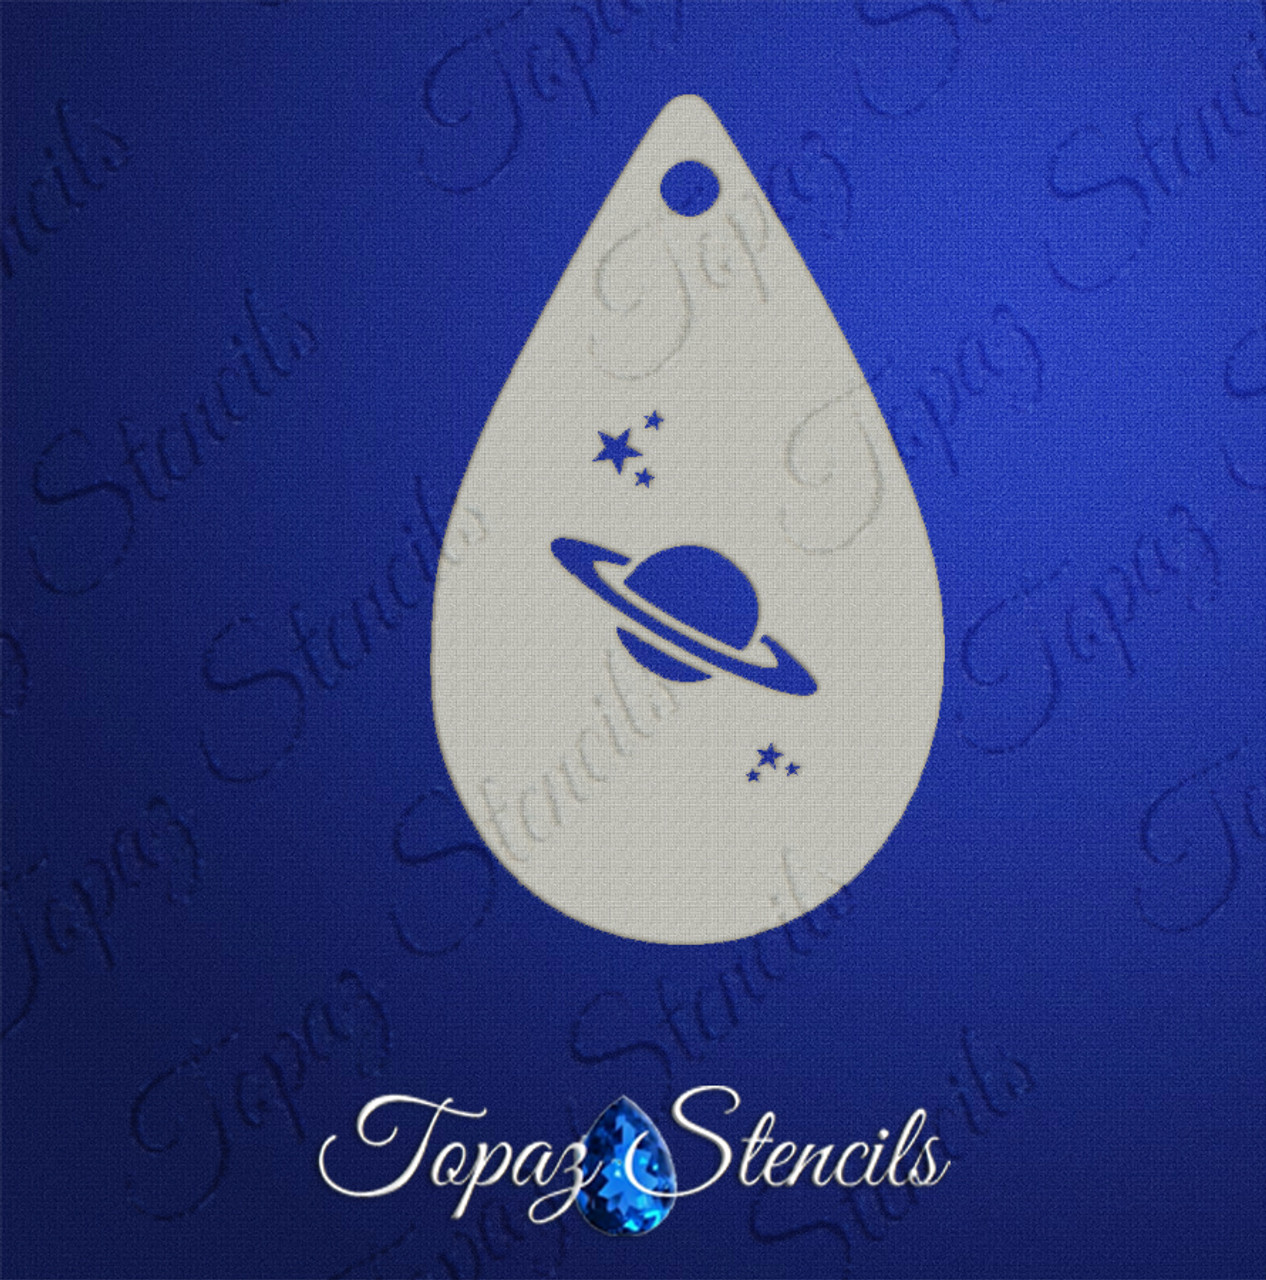 Saturn - Topaz Stencils